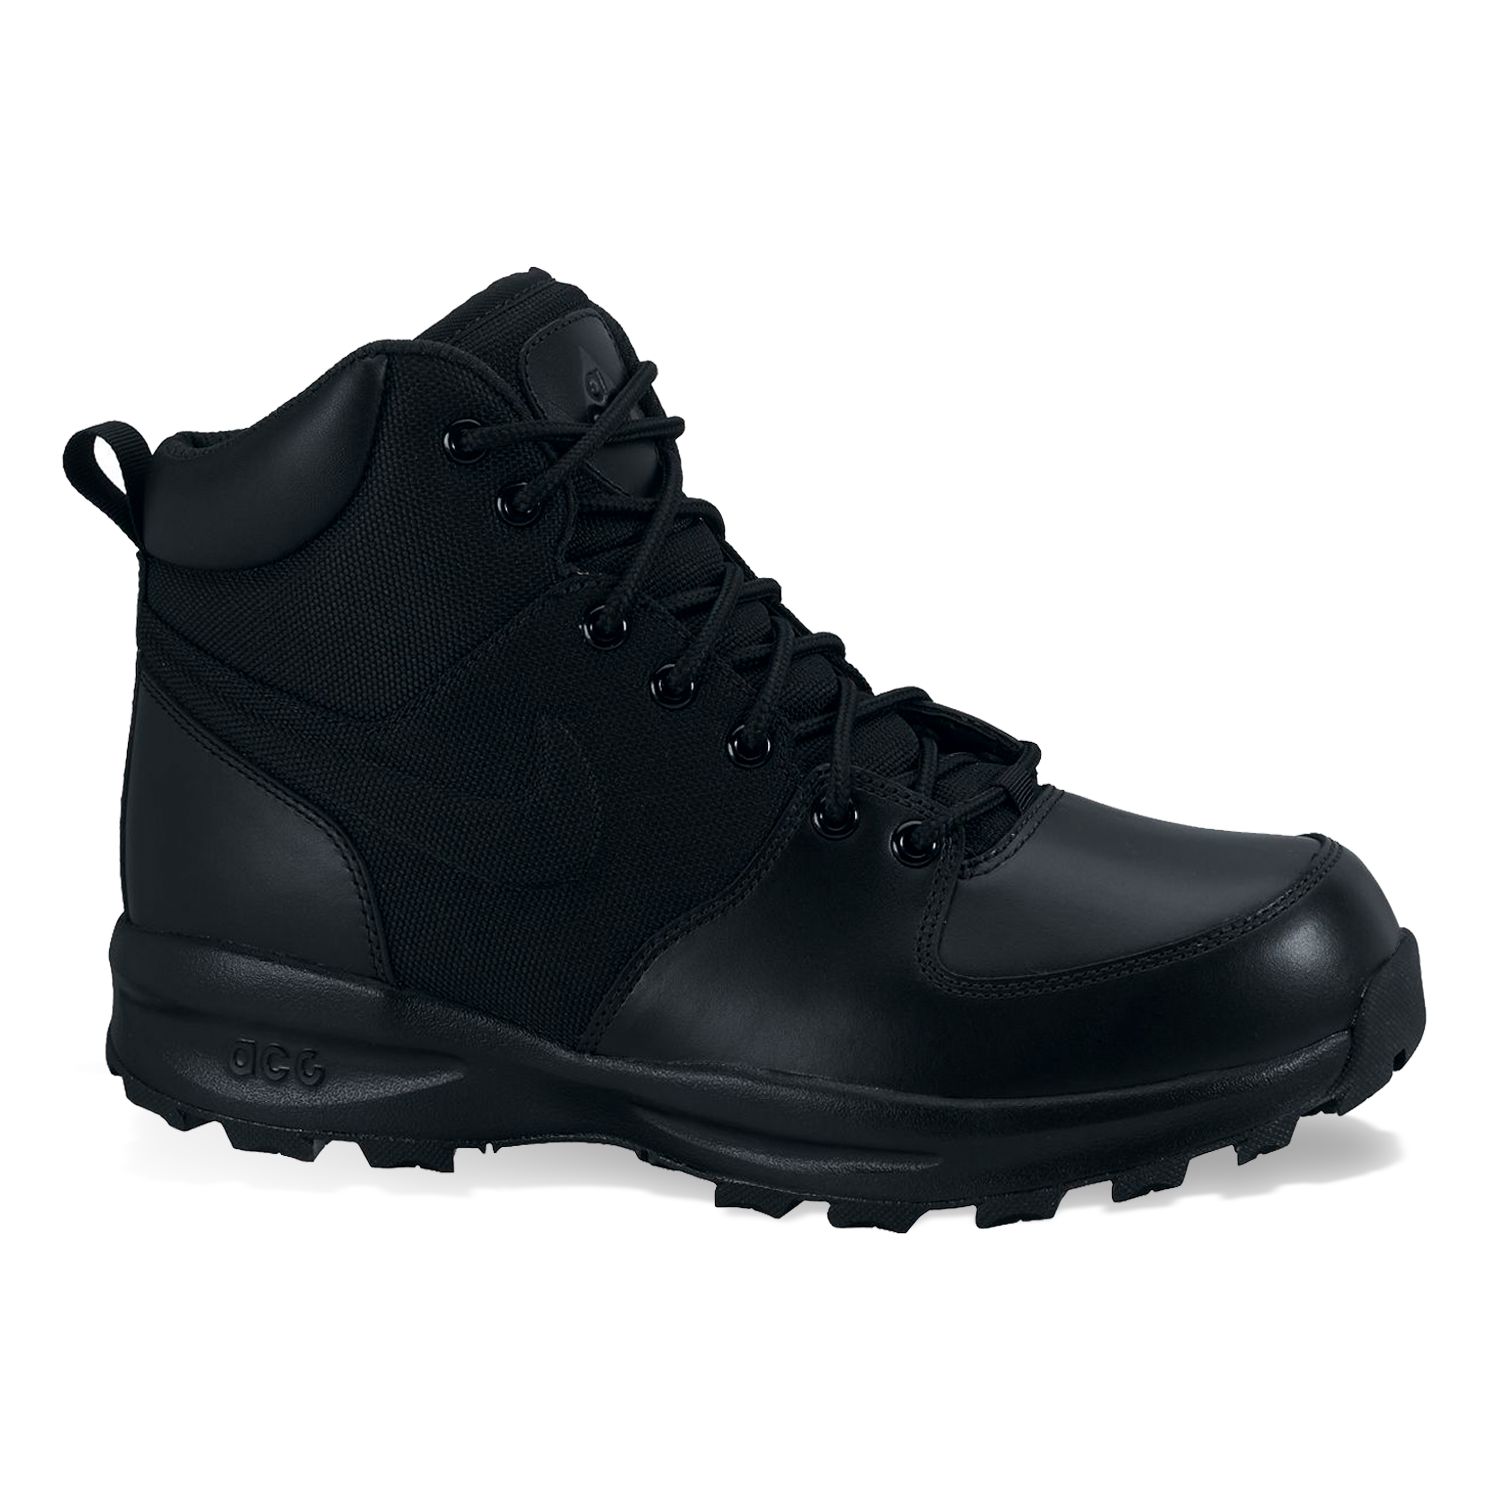 nike manoa black leather boots